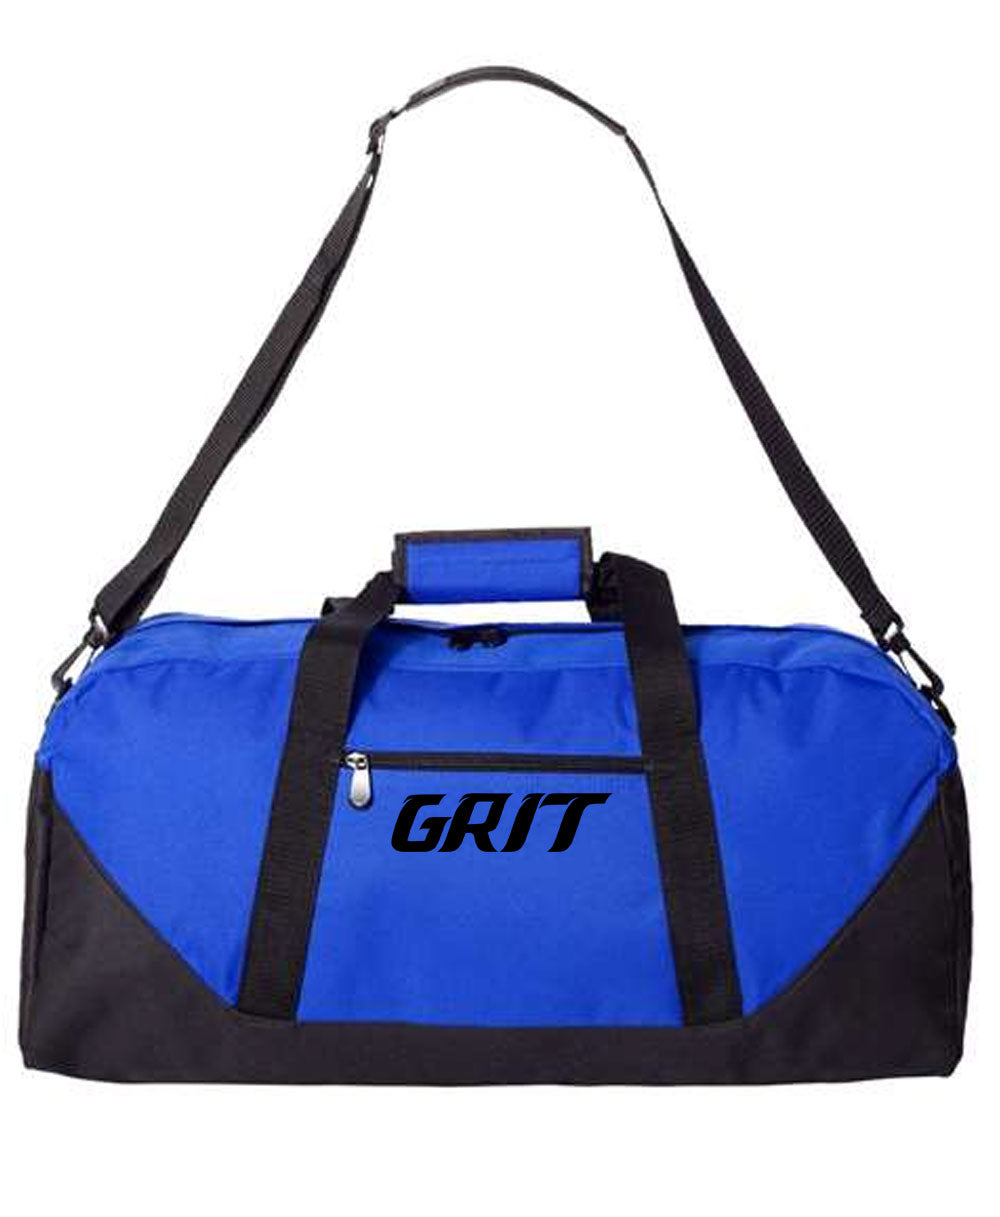 GRIT Duffel Bag